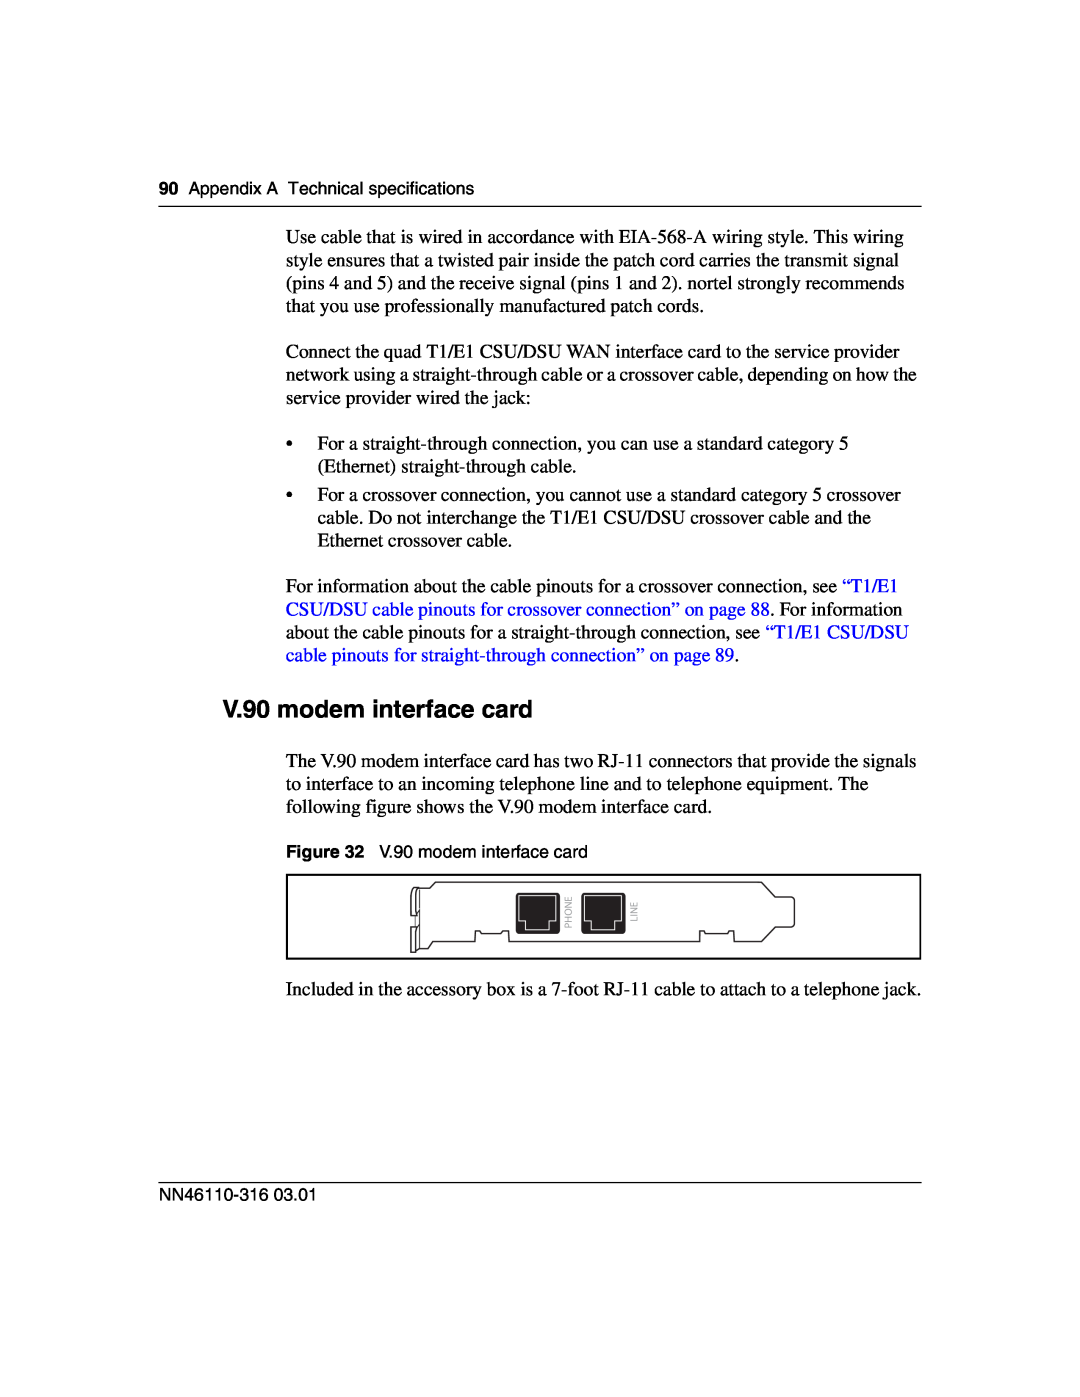 Nortel Networks 1750 manual V.90 modem interface card, Phone, Line 